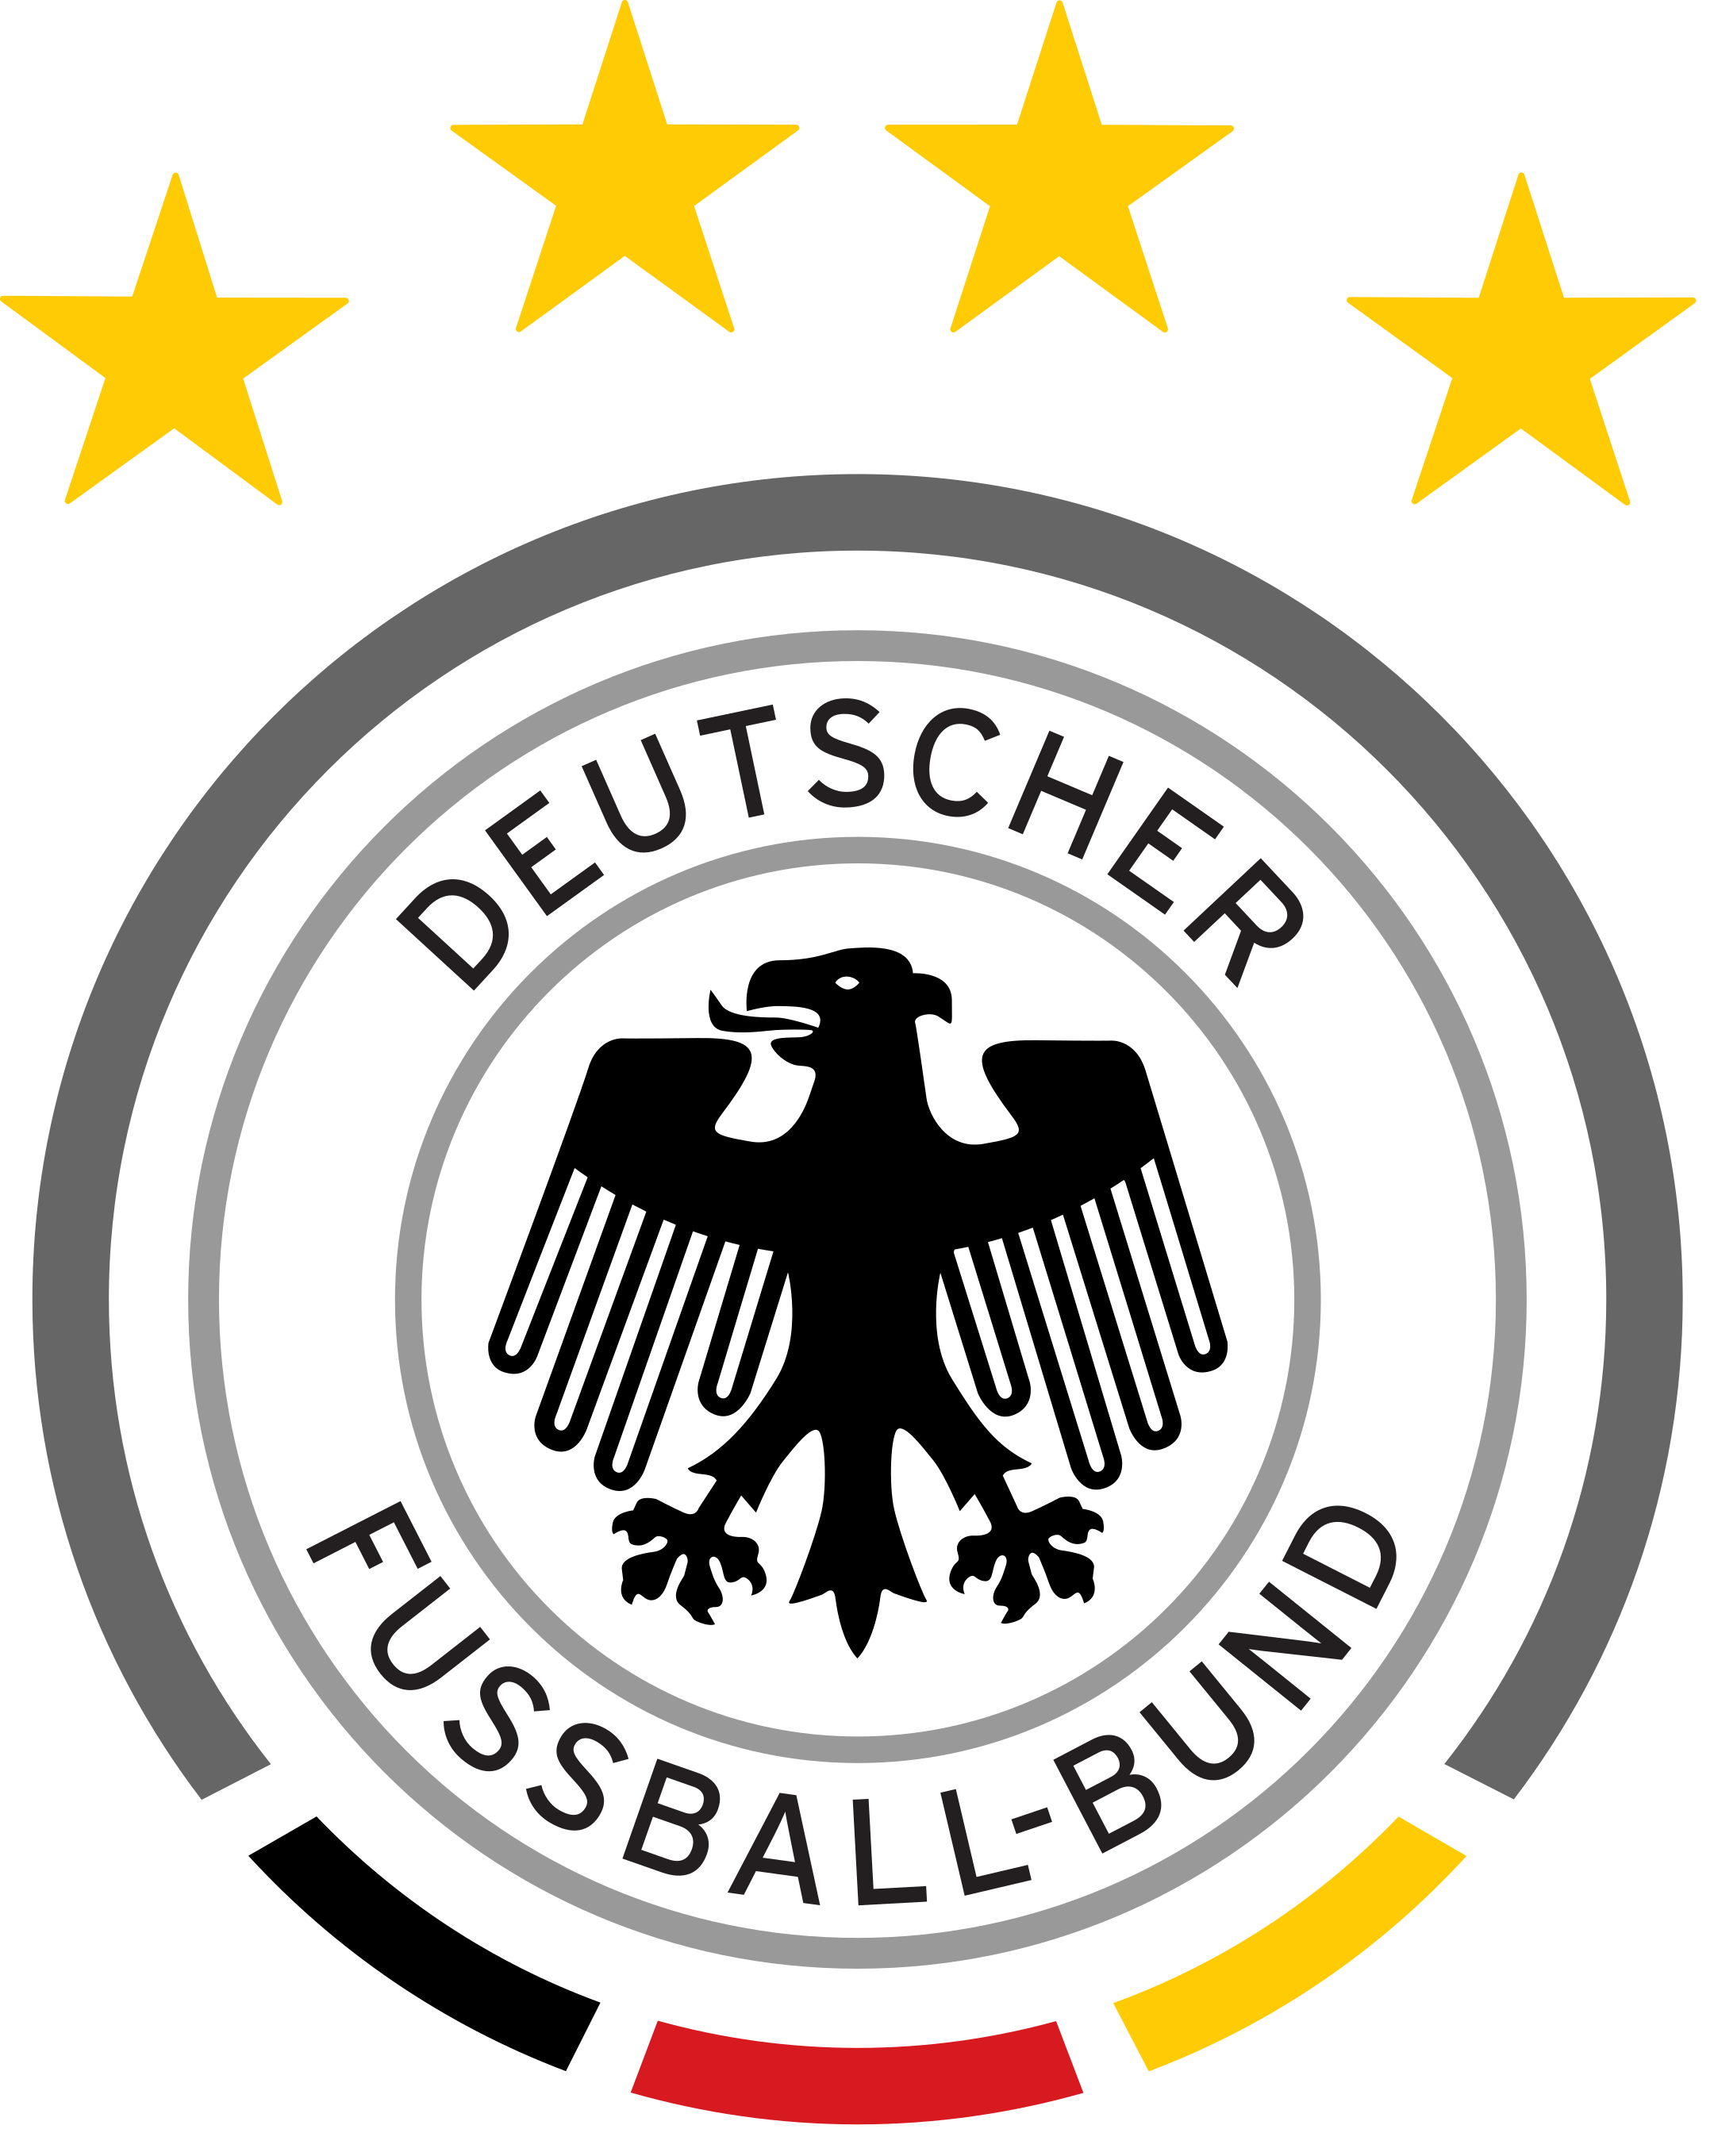 germany national football team logo 1 - Germany National Football Team Logo